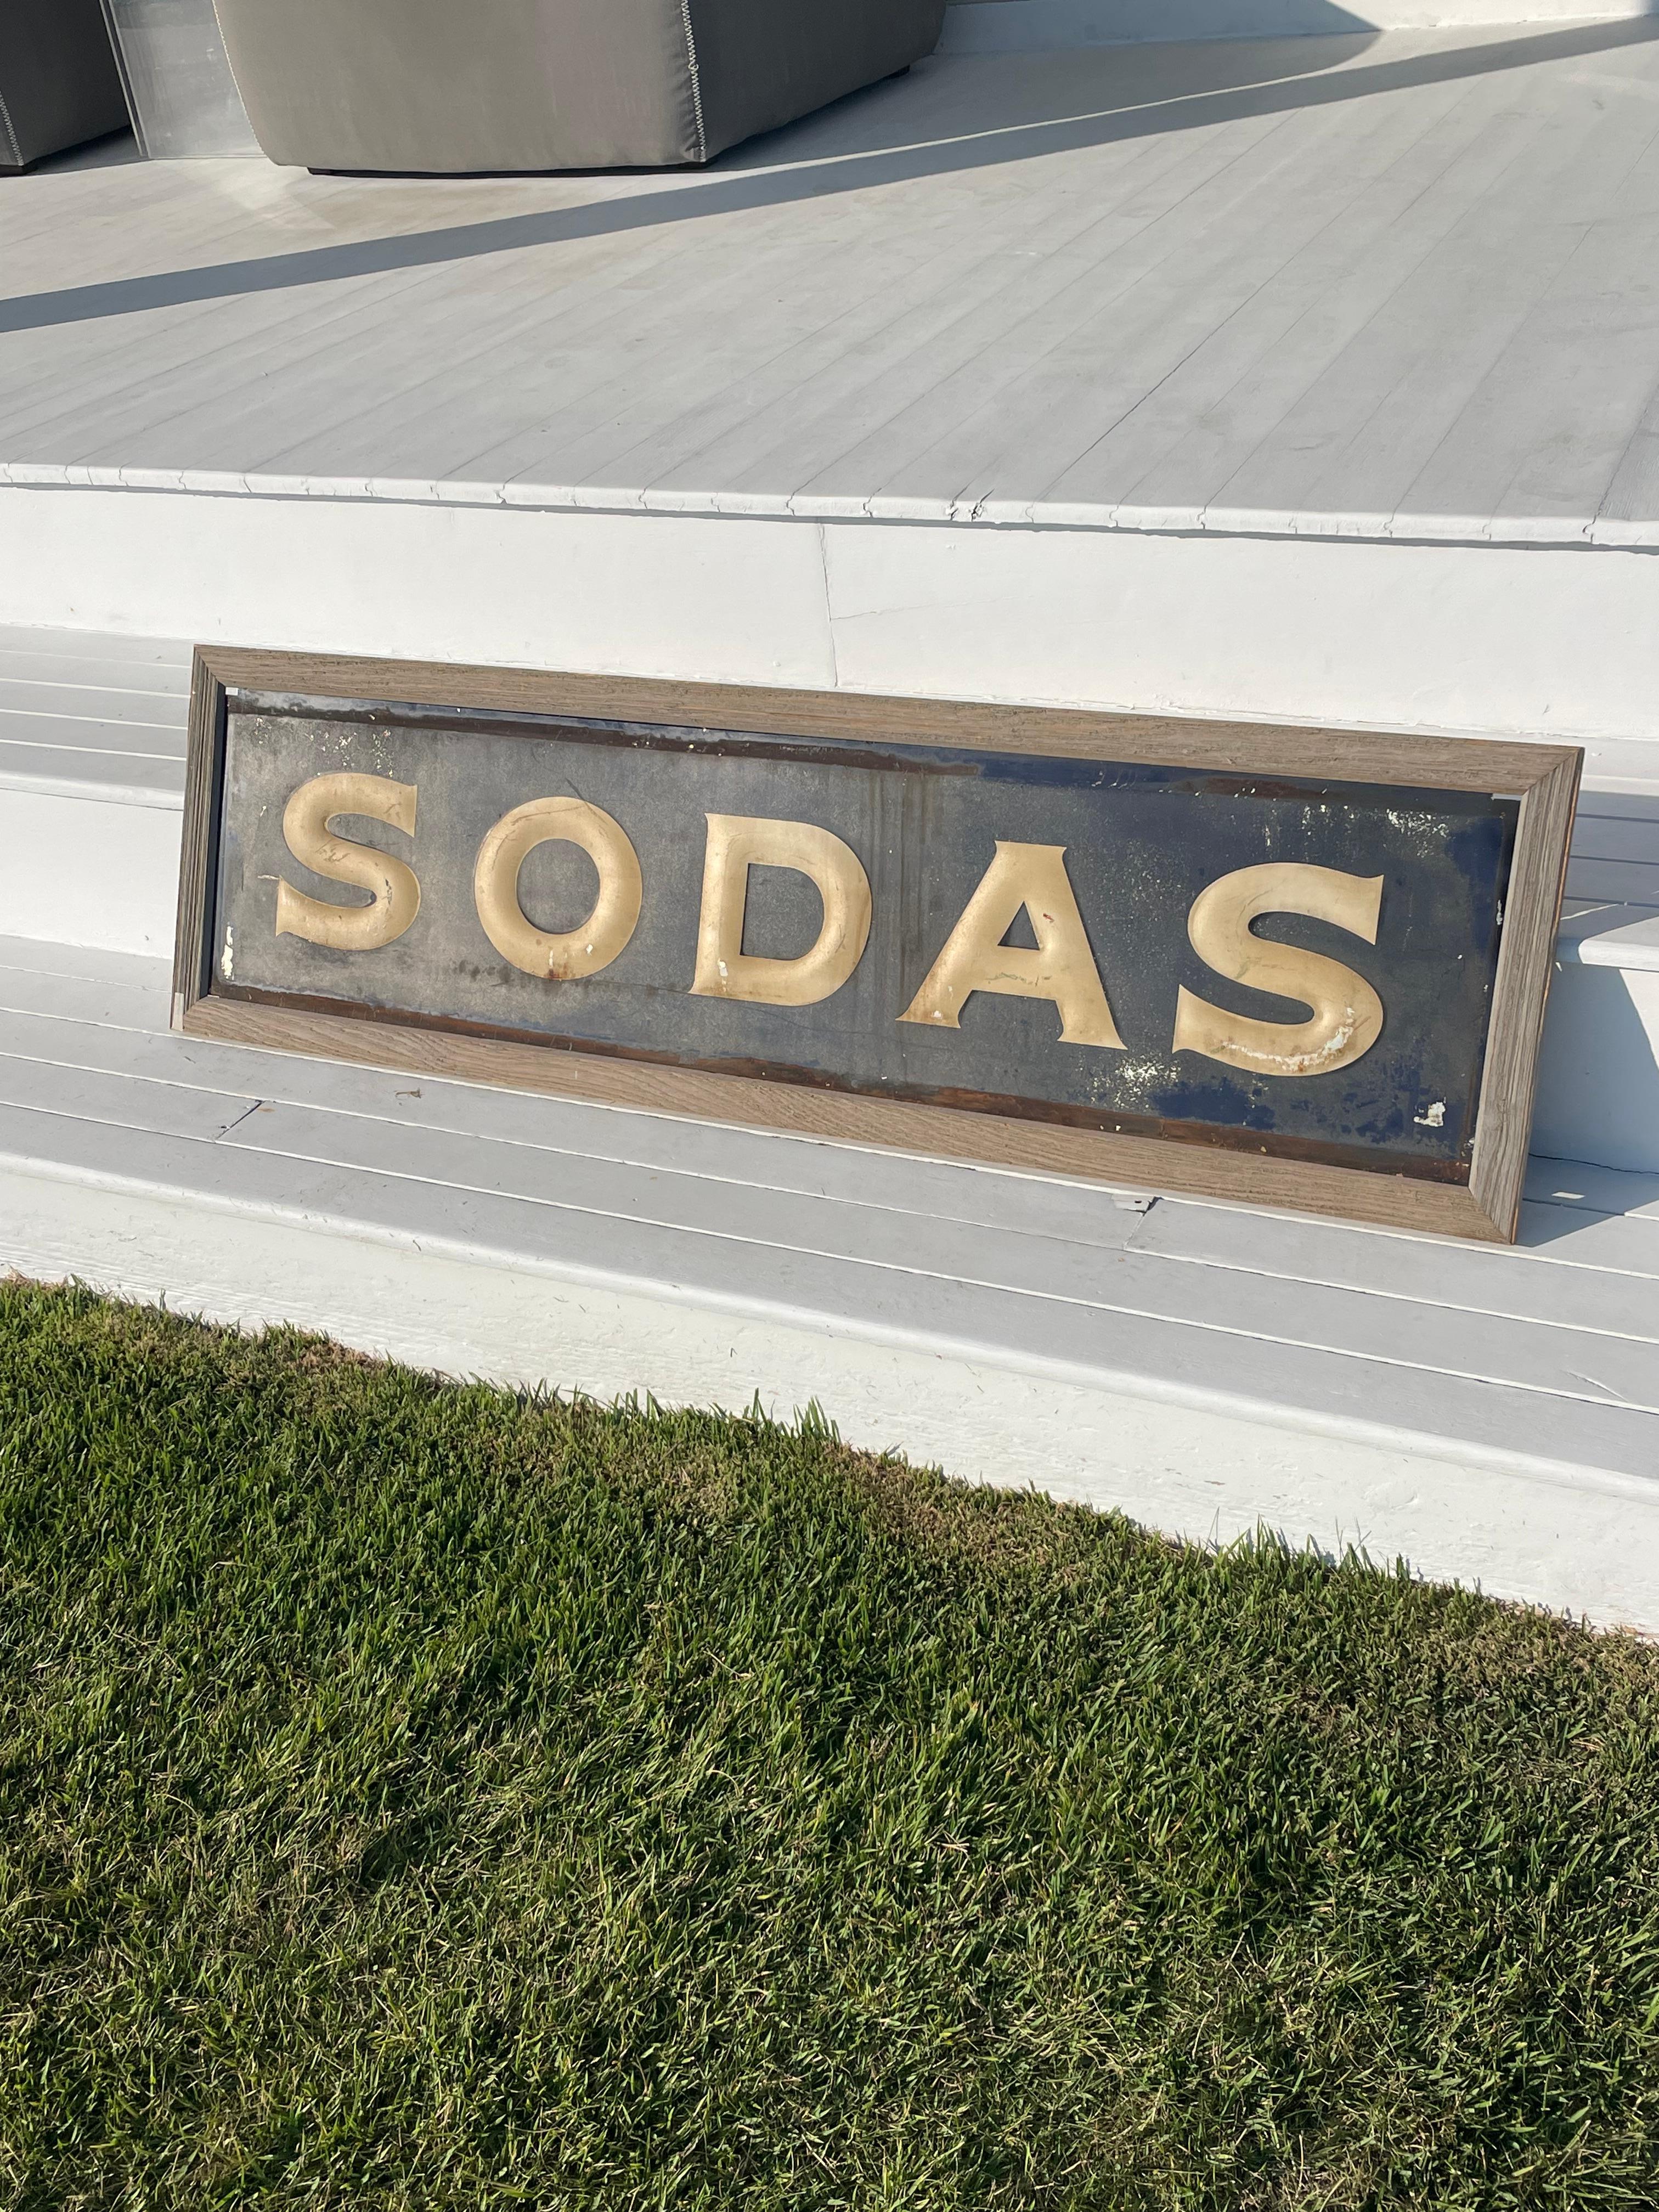 American Vintage Advertising “SODAS” Metal Embossed Sign For Sale